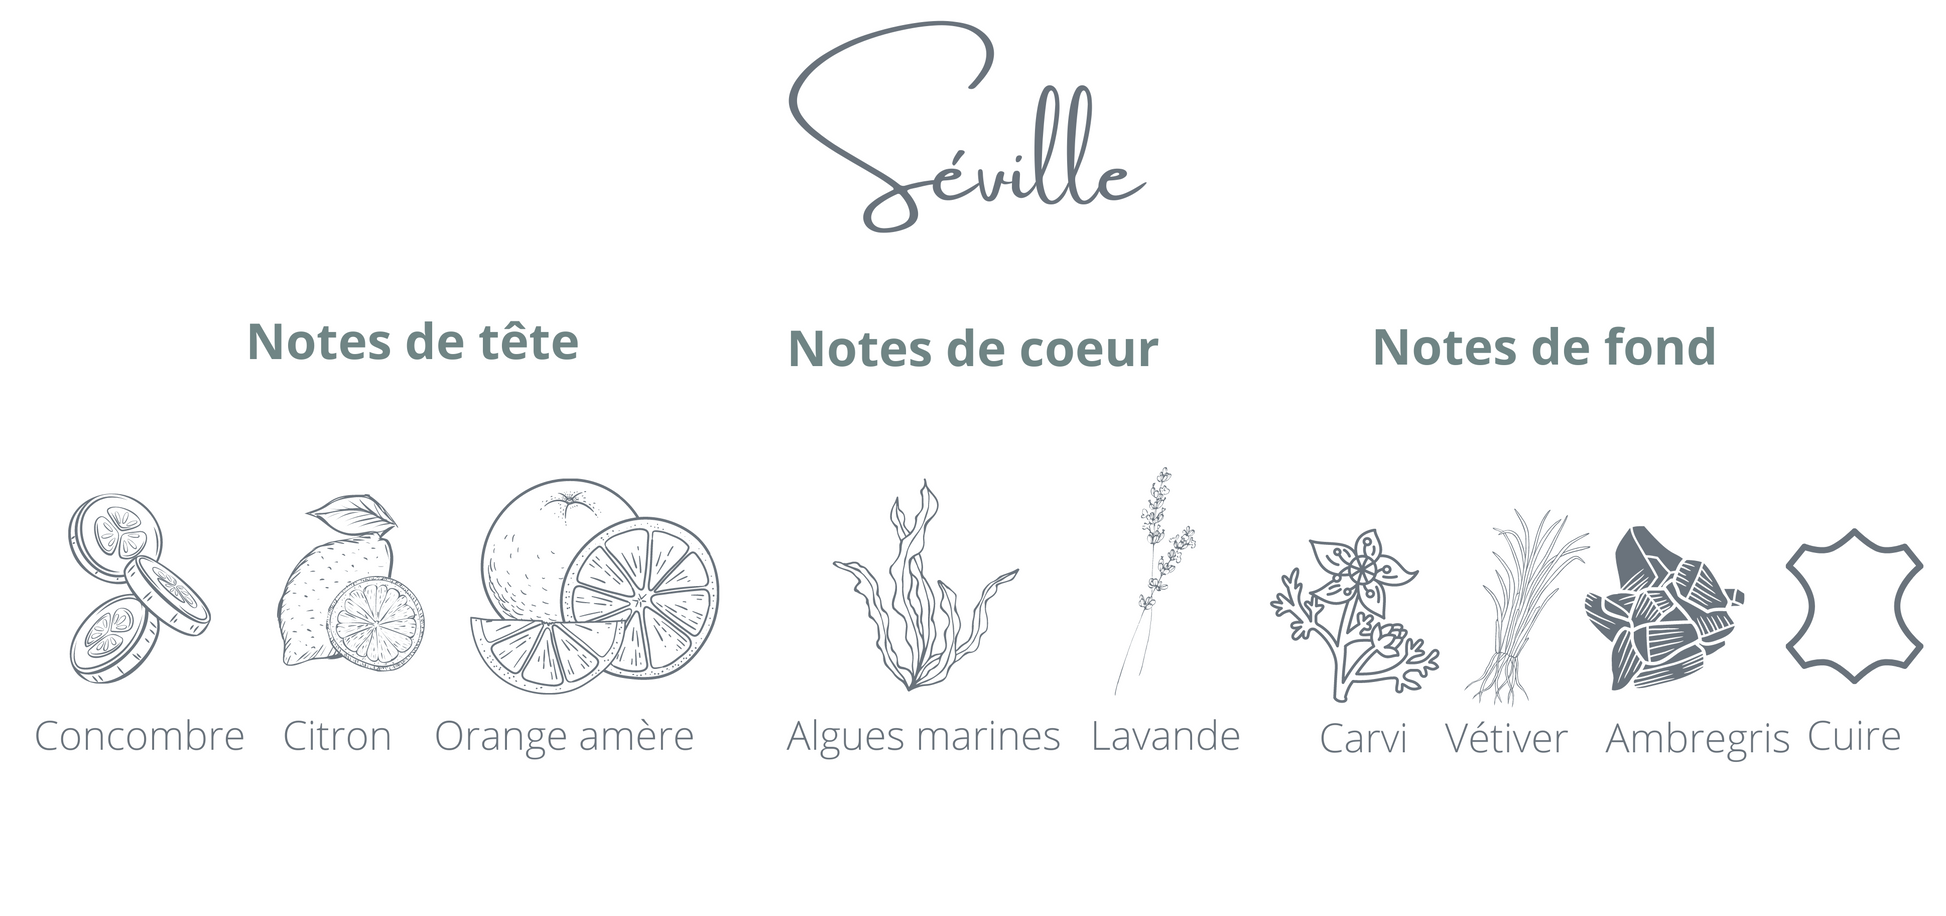 Bougie montréal - Séville  - Coton Corail - Bougie rechargeable - Notes Concombre Oranges espagnole